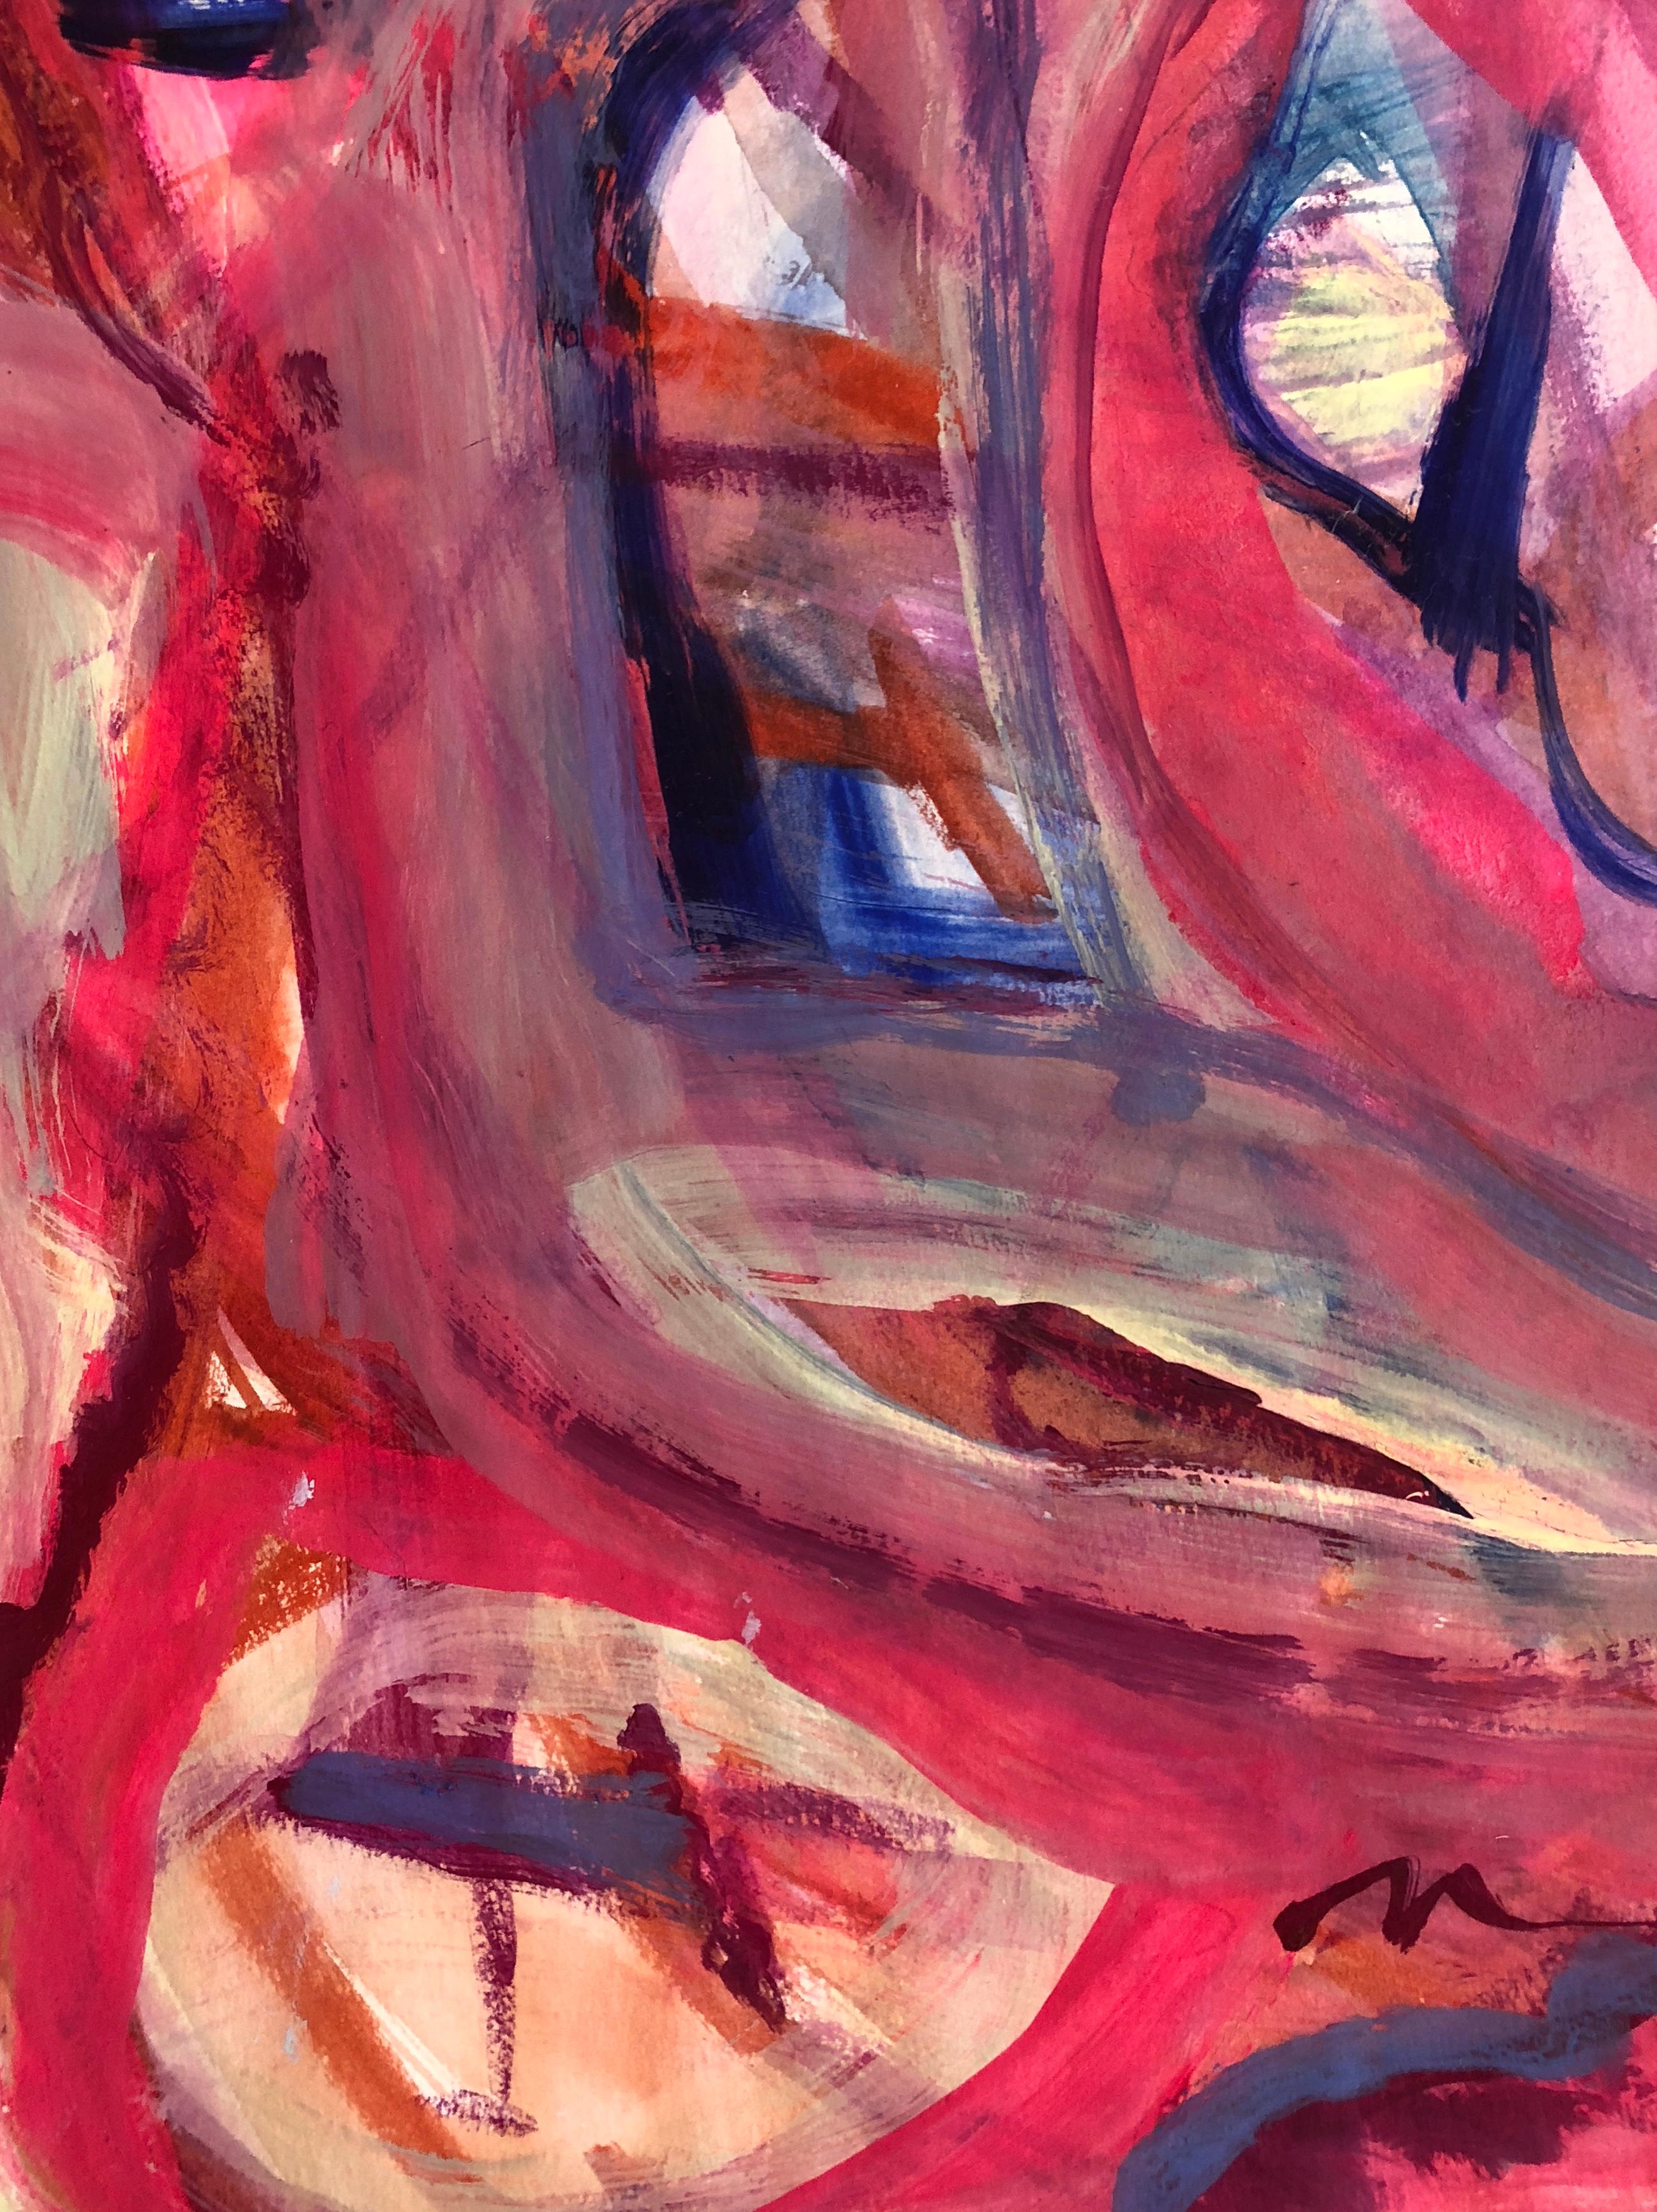 Magnifique huile et aquarelle sur papier de l'artiste expressionniste abstraite Adine Stix. De belles nuances de rose, de violet, de bleu cobalt avec une pointe d'orange couvrent le papier pour créer l'apparence d'une figure abstraite. Signé au dos